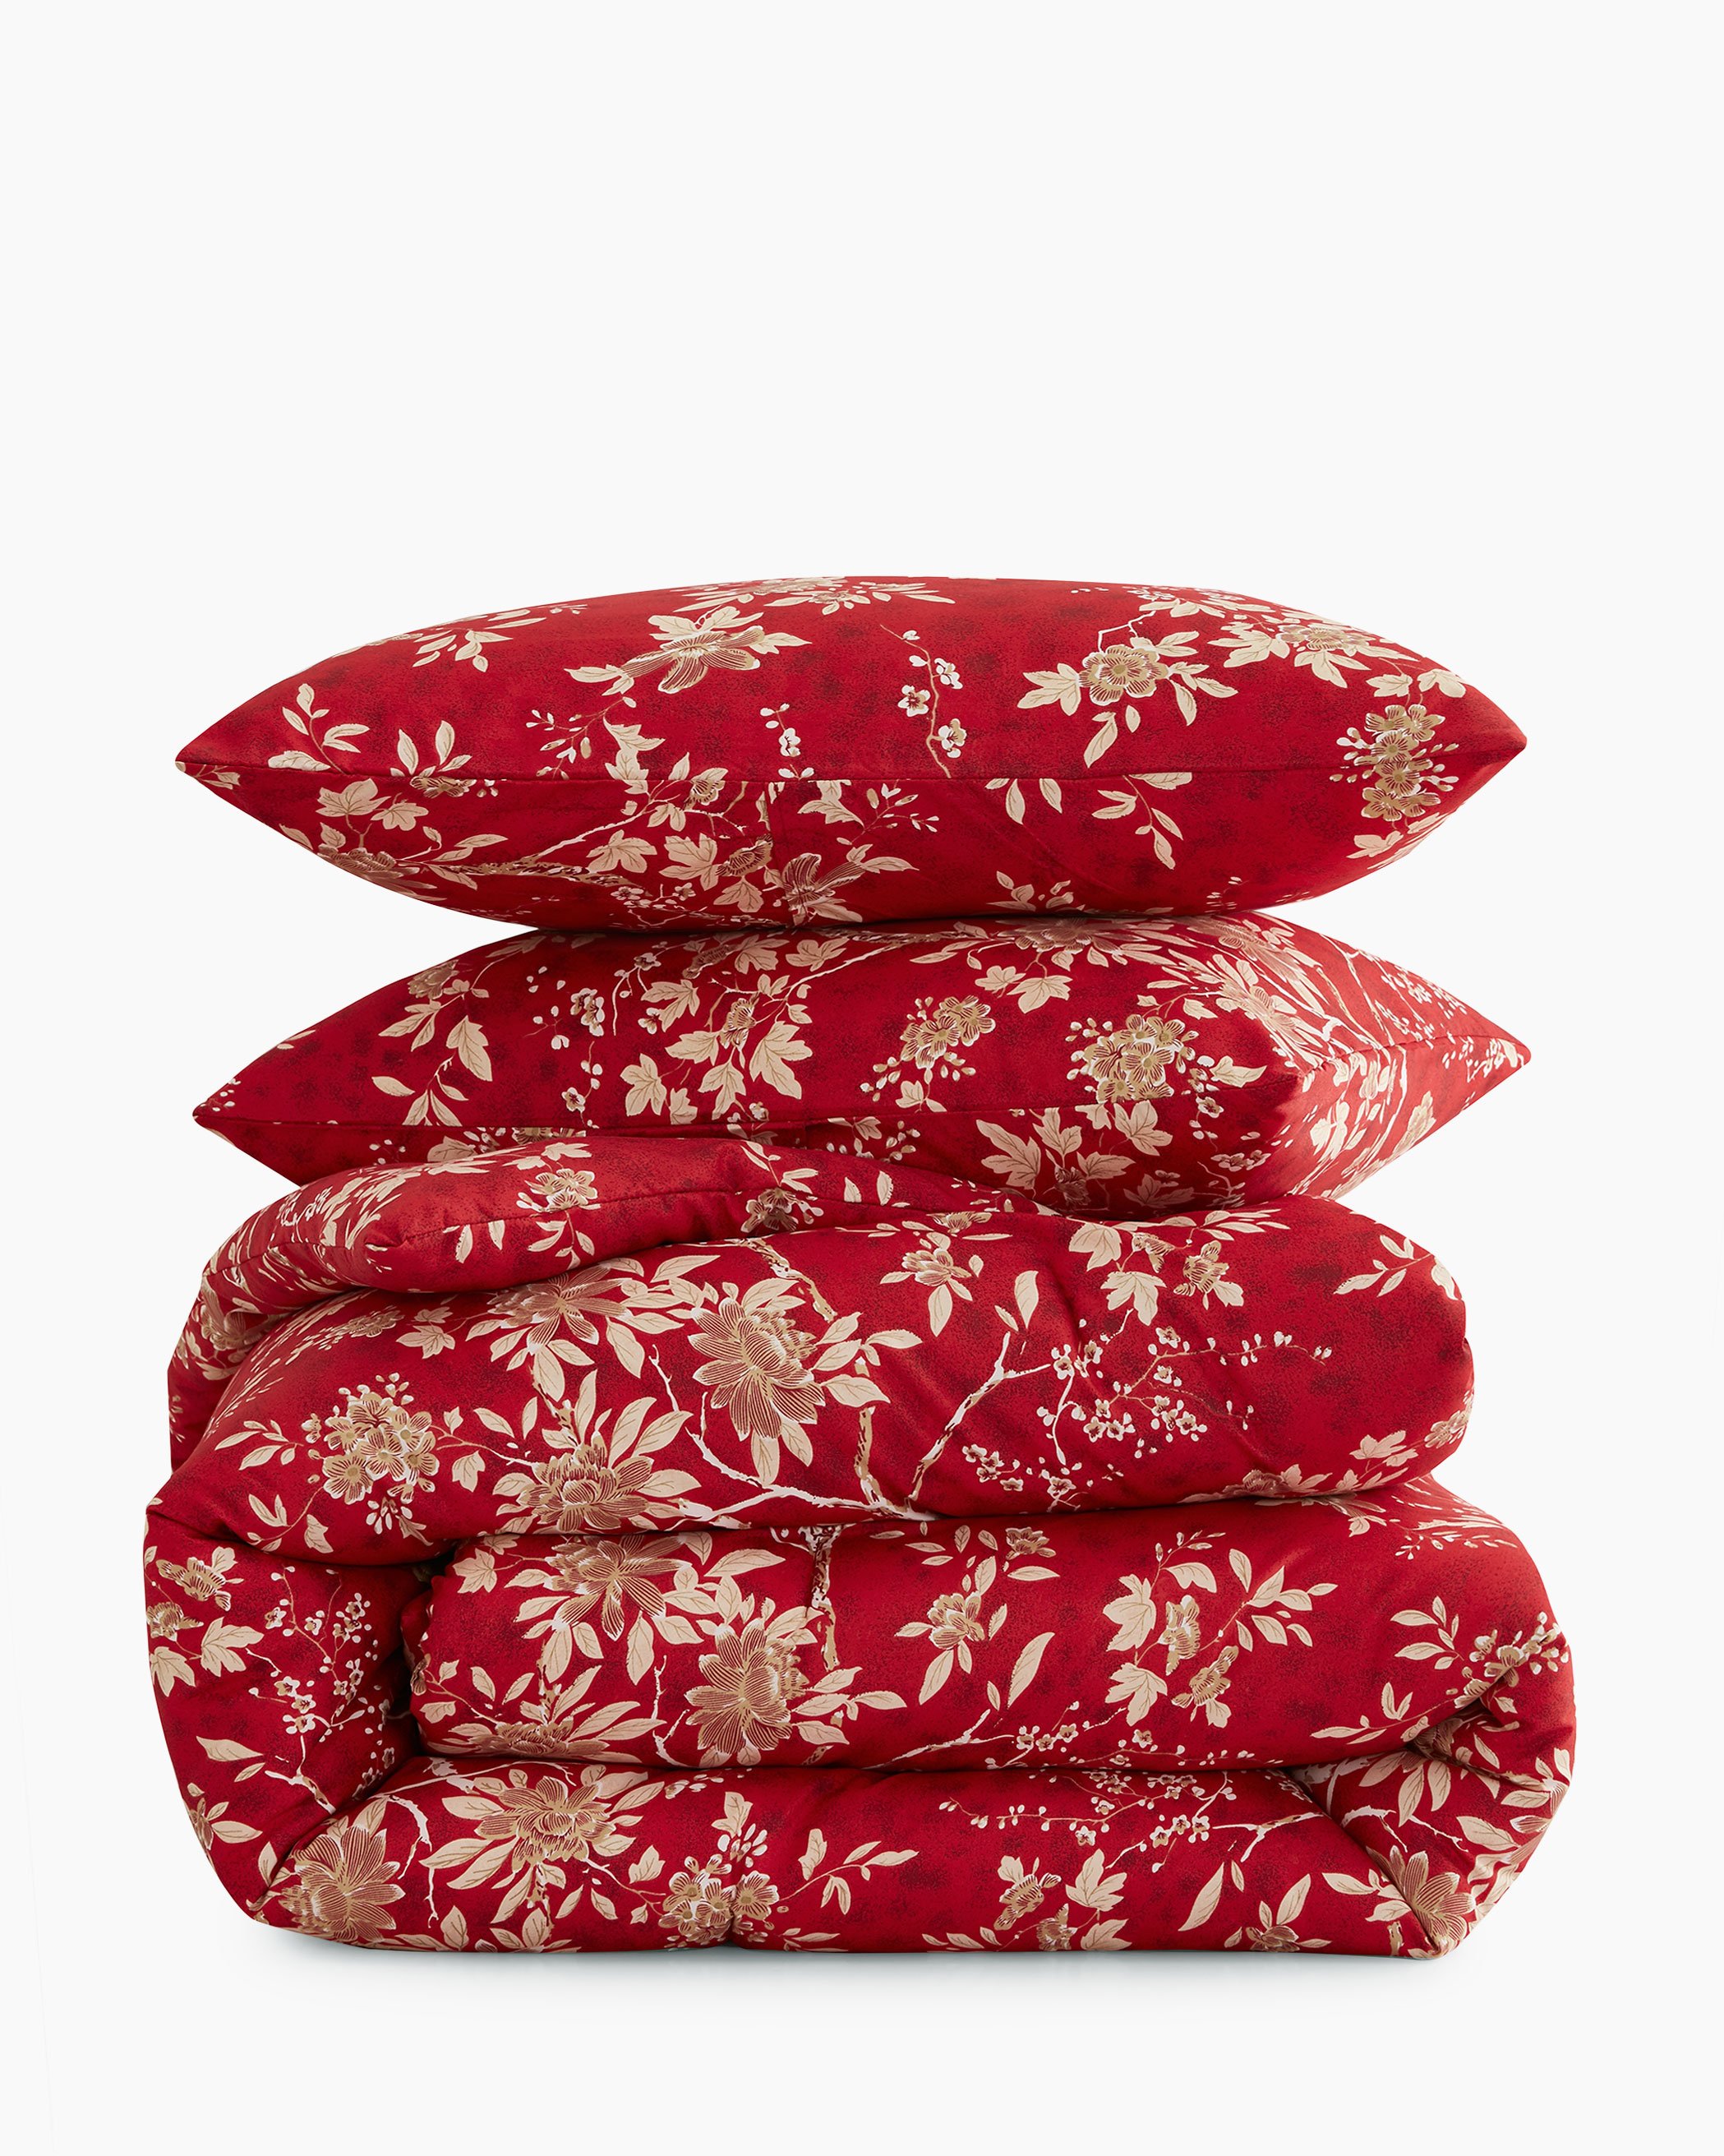 Red Floral Microfiber Comforter Set